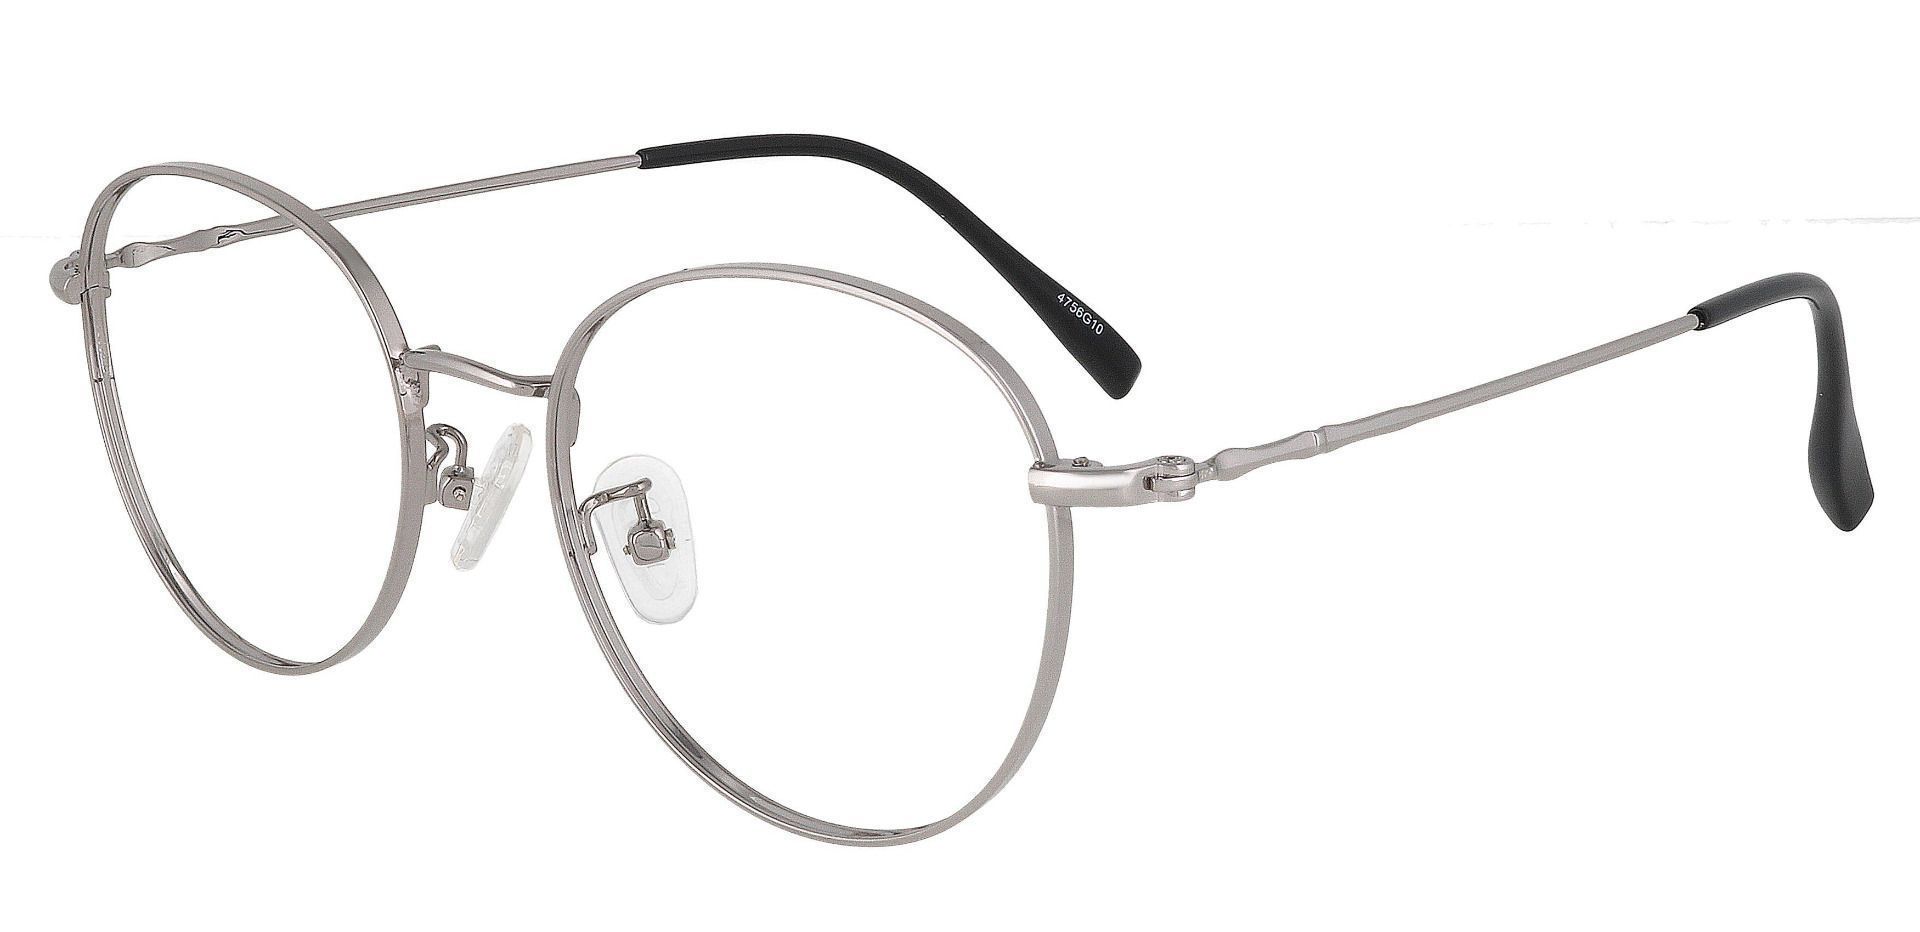 Astoria Oval Prescription Glasses - Silver